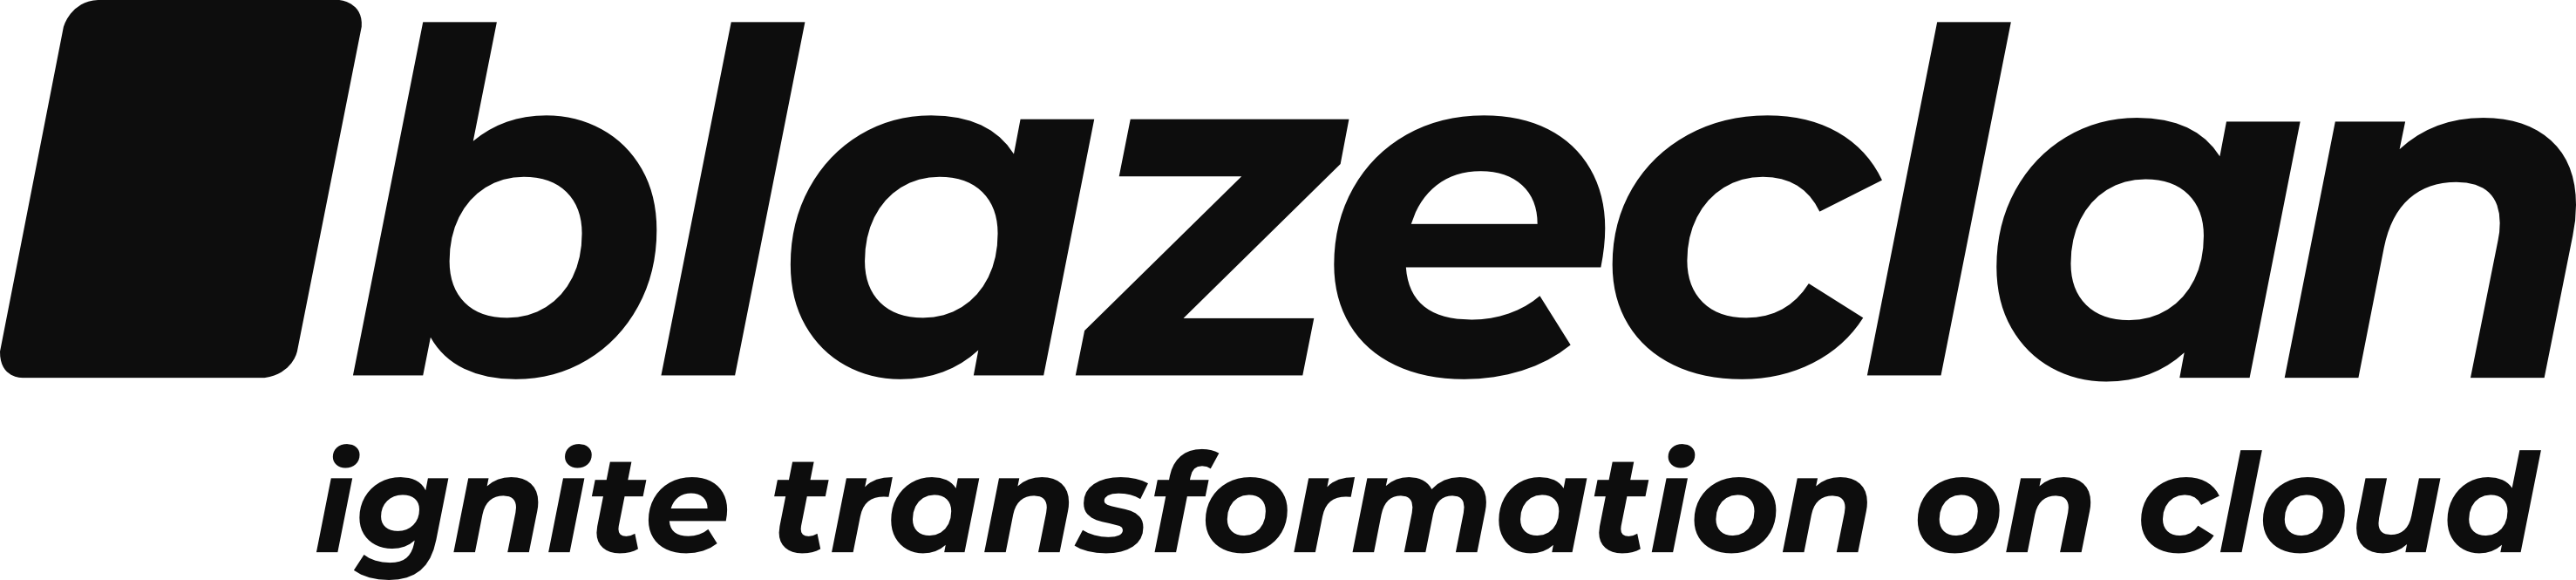 Blazeclan logo Full Form Full black 90 1 